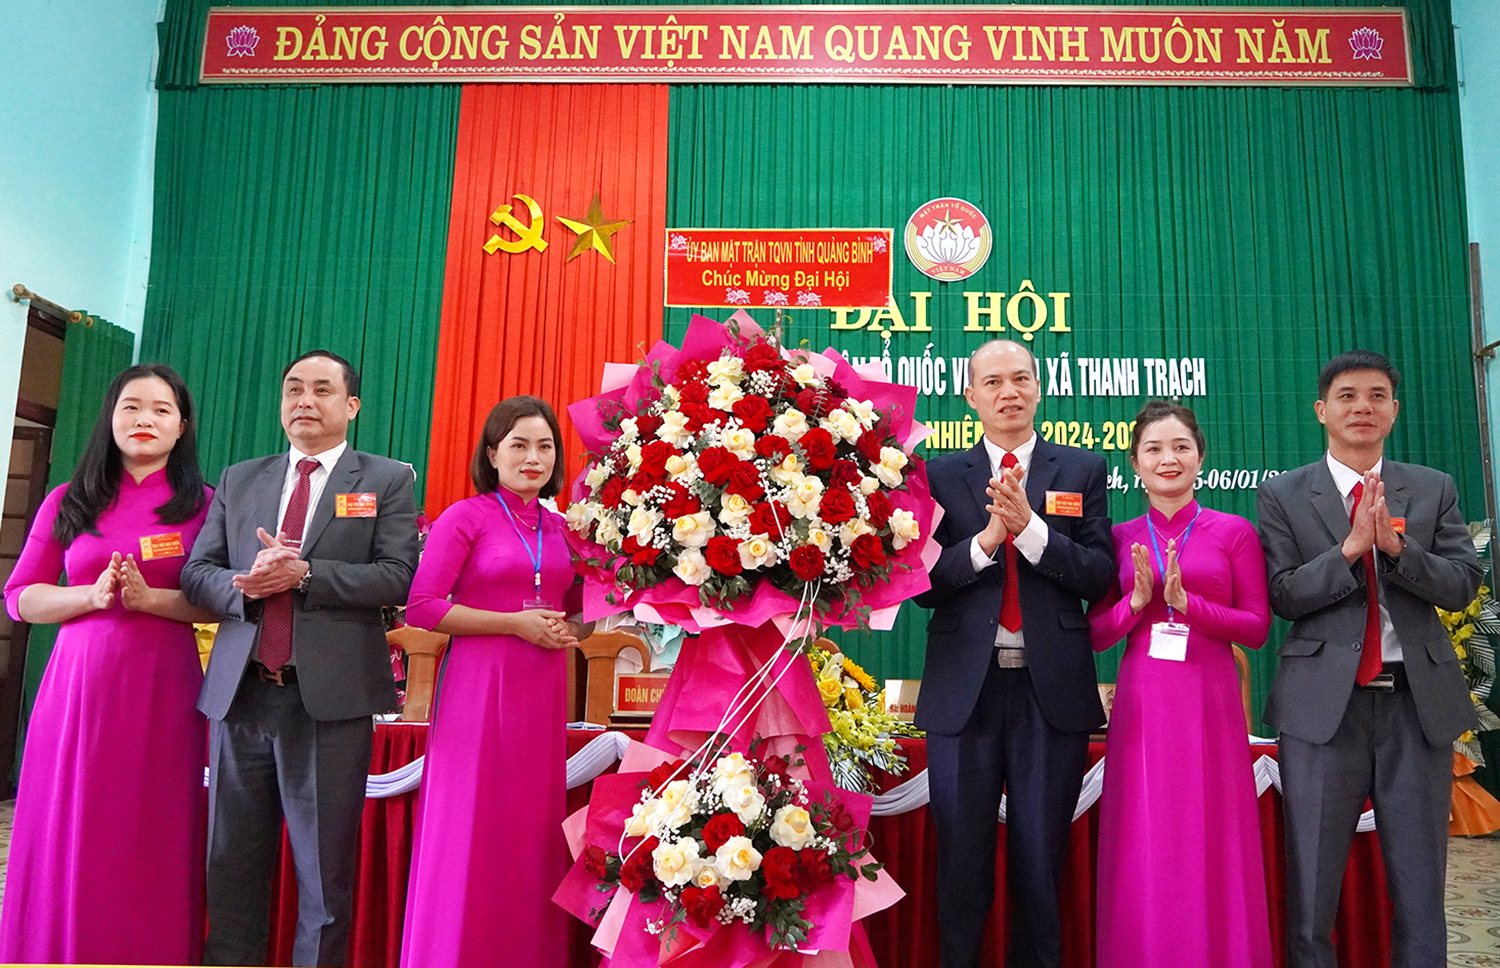 Bố Trạch: Tổ chức thành công đại hội điểm Mặt trận Tổ quốc Việt Nam xã Thanh Trạch, nhiệm kỳ 2024-2029